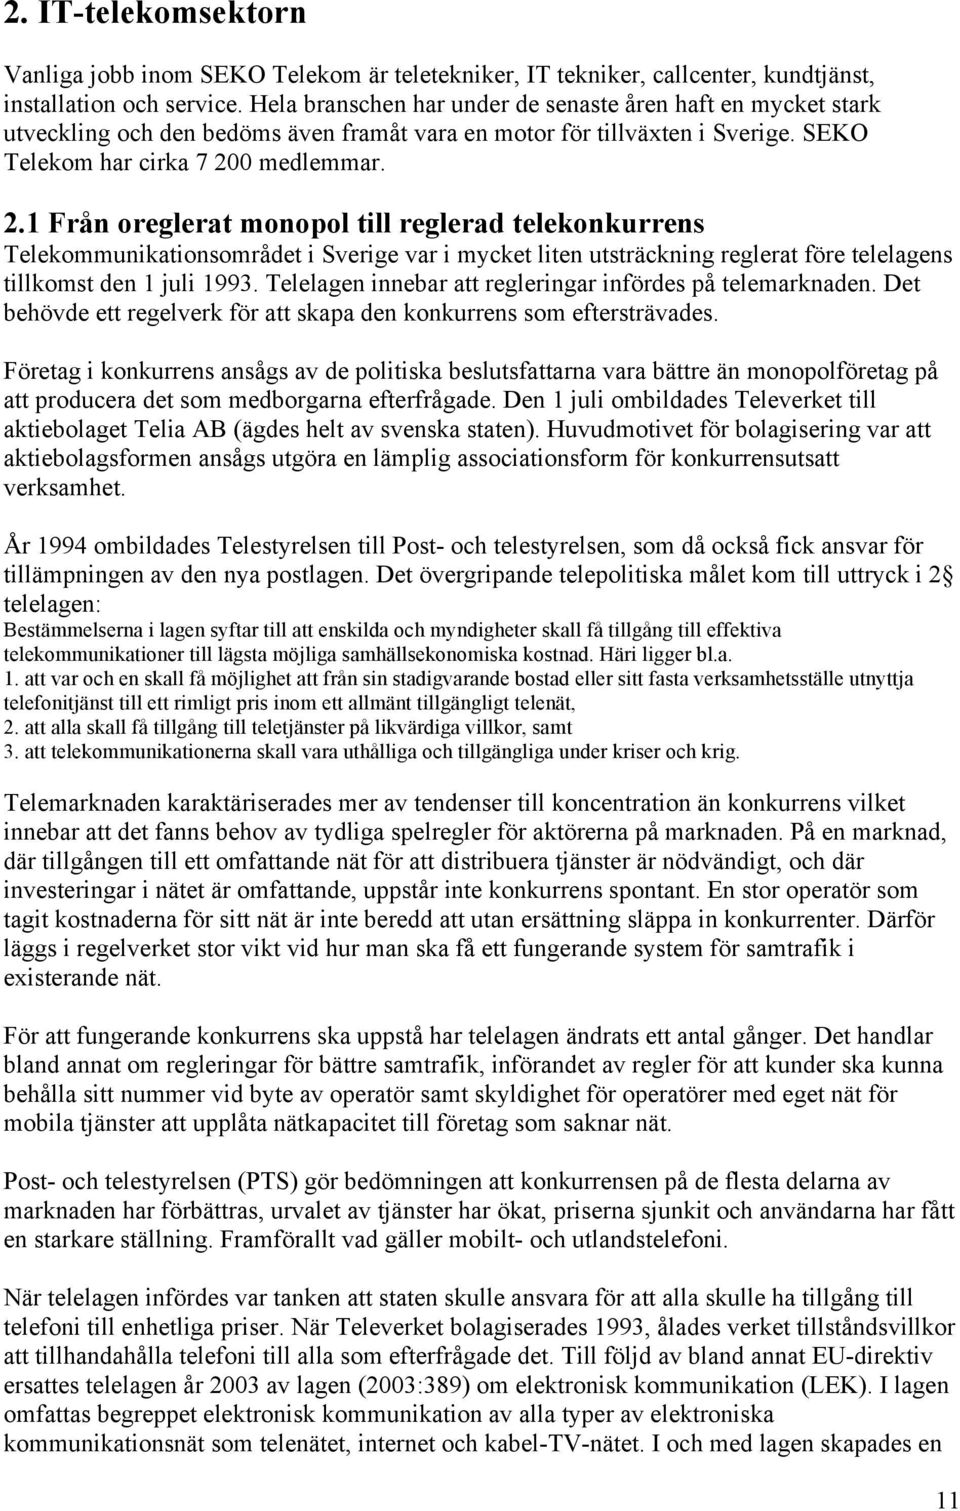 0 medlemmar. 2.1 Från oreglerat monopol till reglerad telekonkurrens Telekommunikationsområdet i Sverige var i mycket liten utsträckning reglerat före telelagens tillkomst den 1 juli 1993.